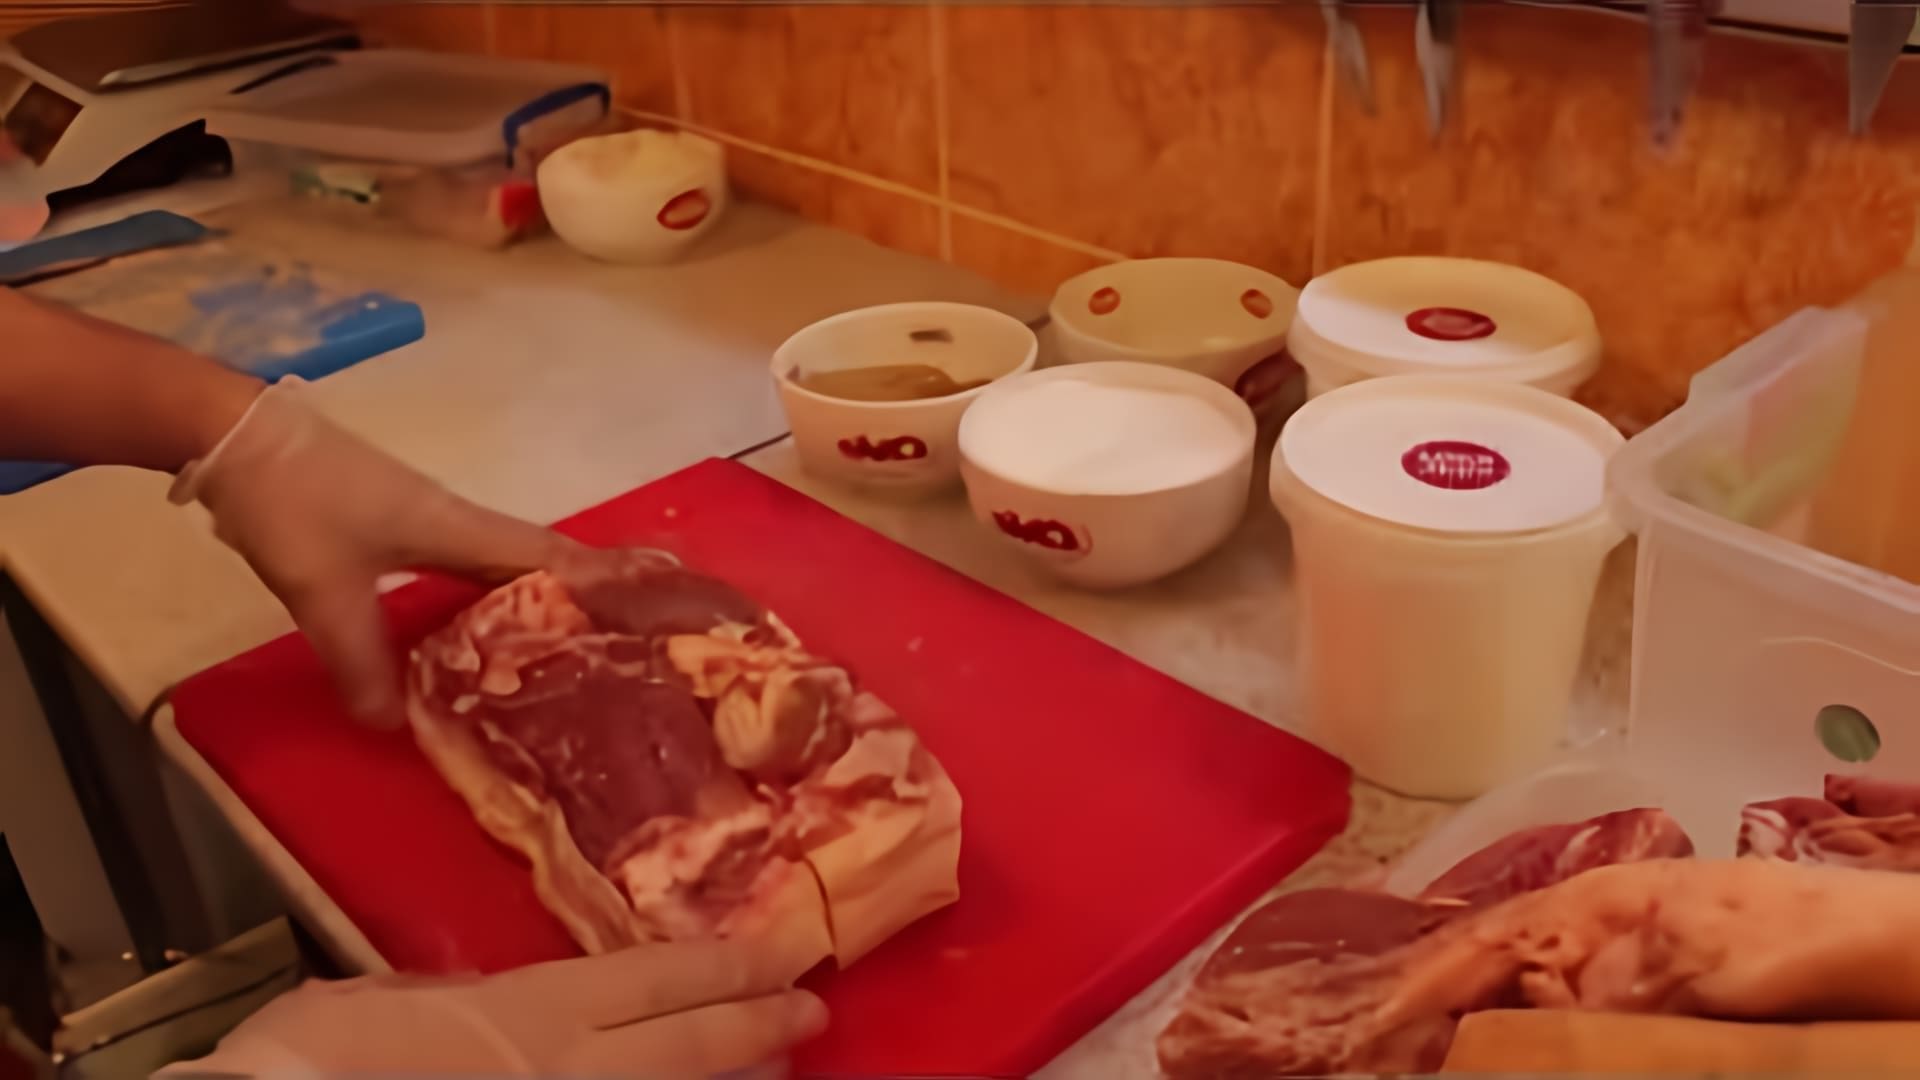 В этом видео демонстрируется процесс приготовления бекона с использованием нитритной соли и цветной соли